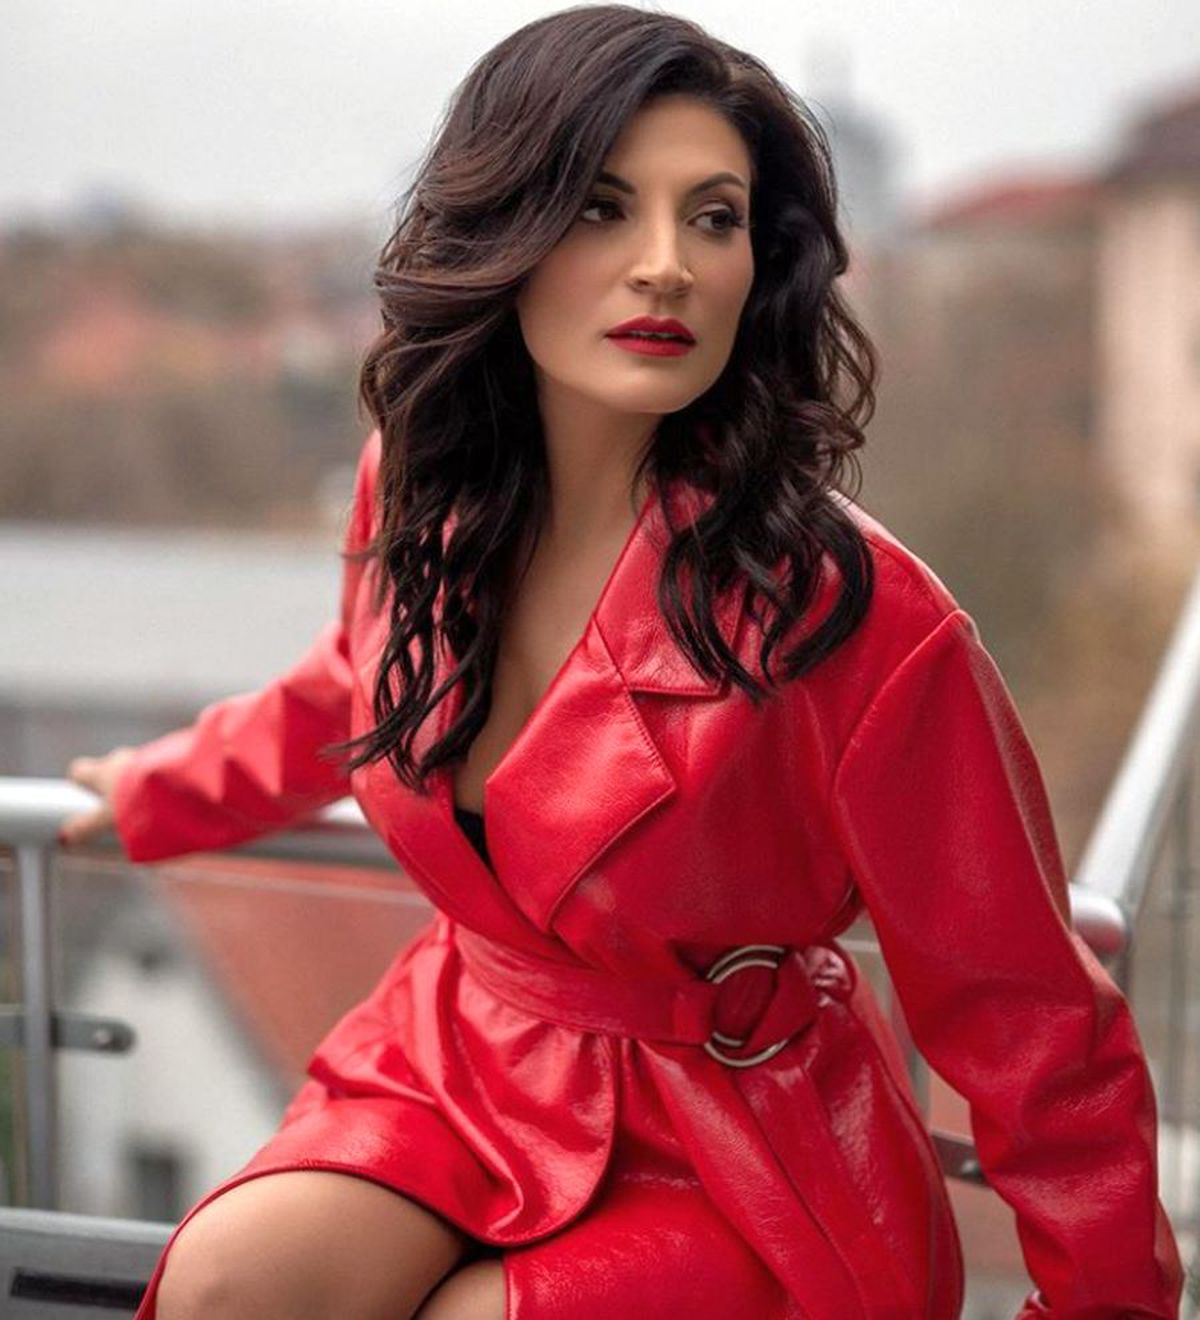 GALERIE FOTO Vă mai aduceți aminte de Ioana Ginghină? Sexy-bruneta din telenovelele românești se distrează din plin, la 42 de ani